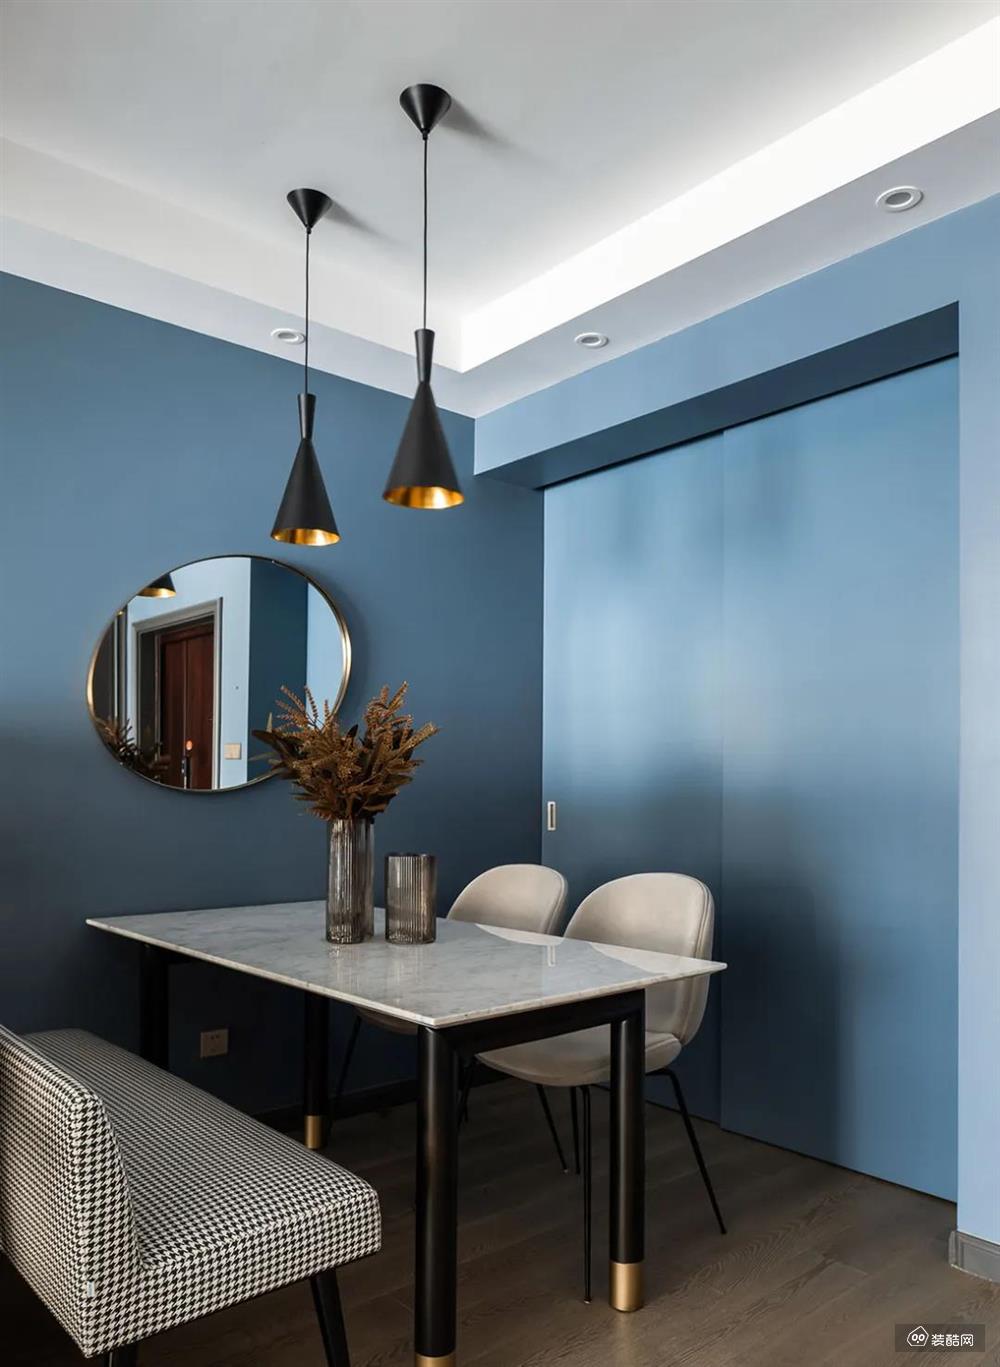 餐厅墙面在蓝色的基础，摆上一张黑色脚+白色石材台面的餐桌，黑白配的设计基础，布置格纹长凳、浅灰色皮艺餐椅，也让用餐氛围显得现代简洁而清爽大方。